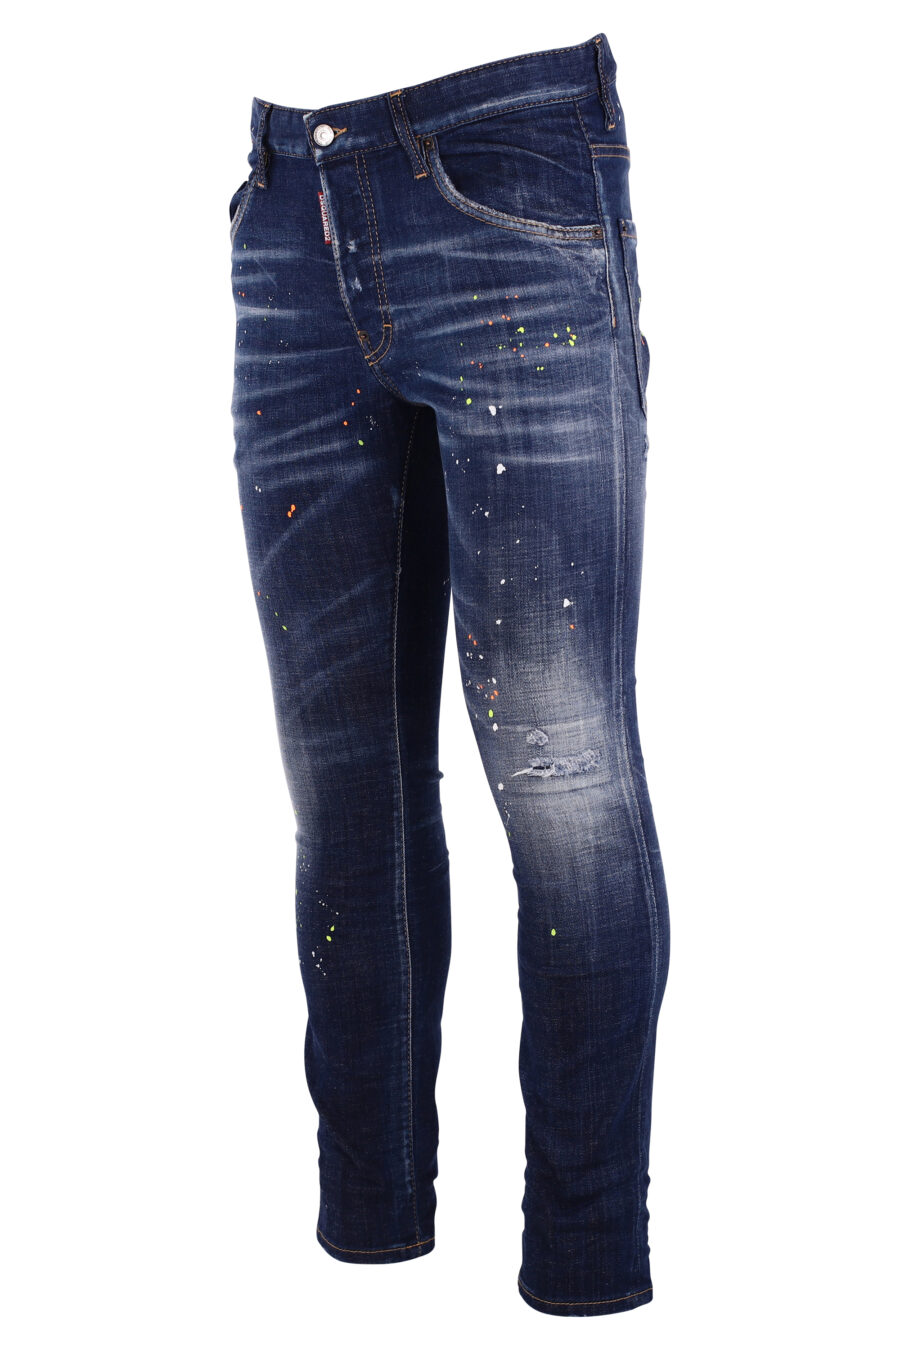 Jeans "Skaterjeans" blau mit weißen Farbspritzern - IMG 8994